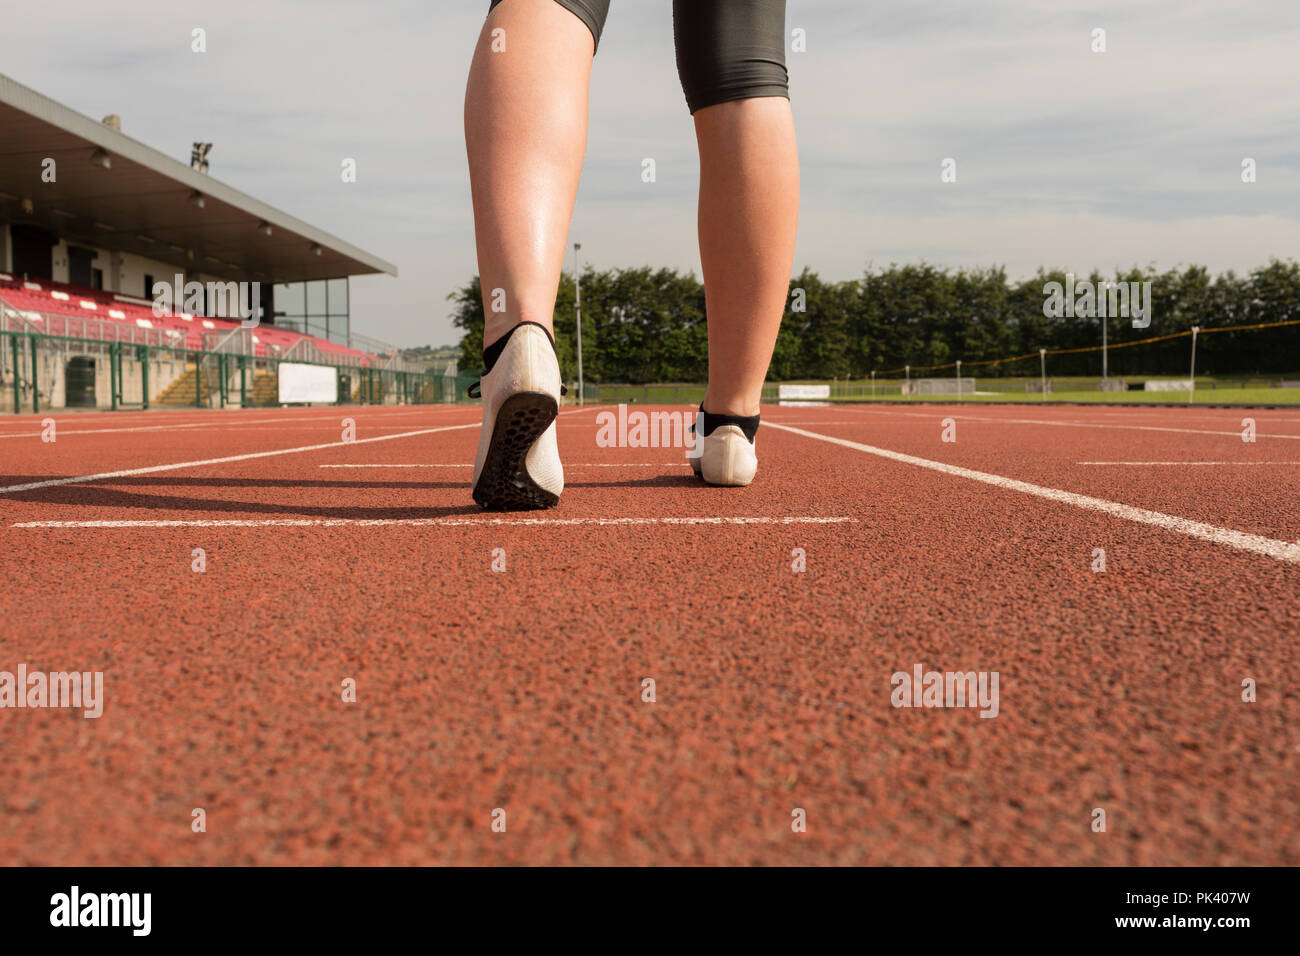 Atletismo femenino de pie sobre una pista de atletismo Foto de stock